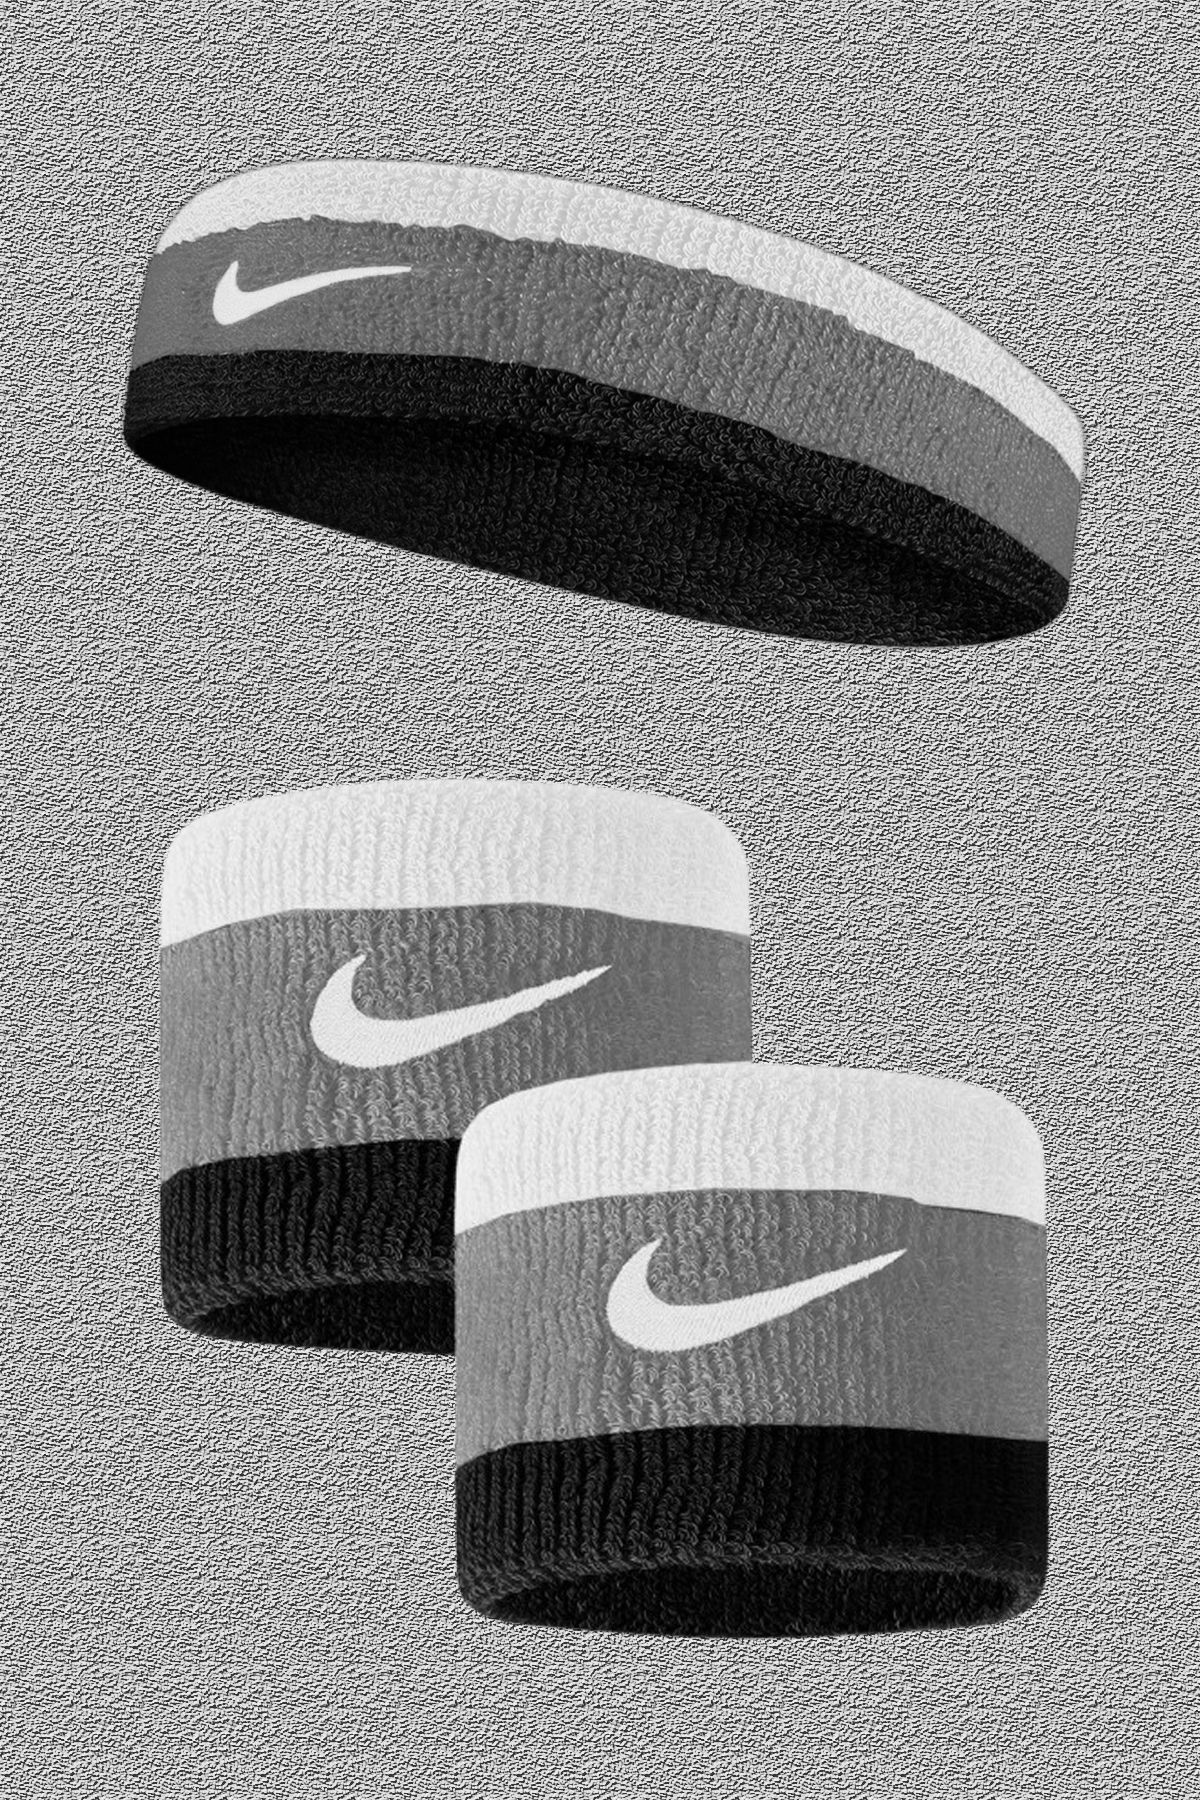 Nike Kafa Bandı ve Havlu Bilekliği - 2'li Set - Yılbaşı Özel Fiyat